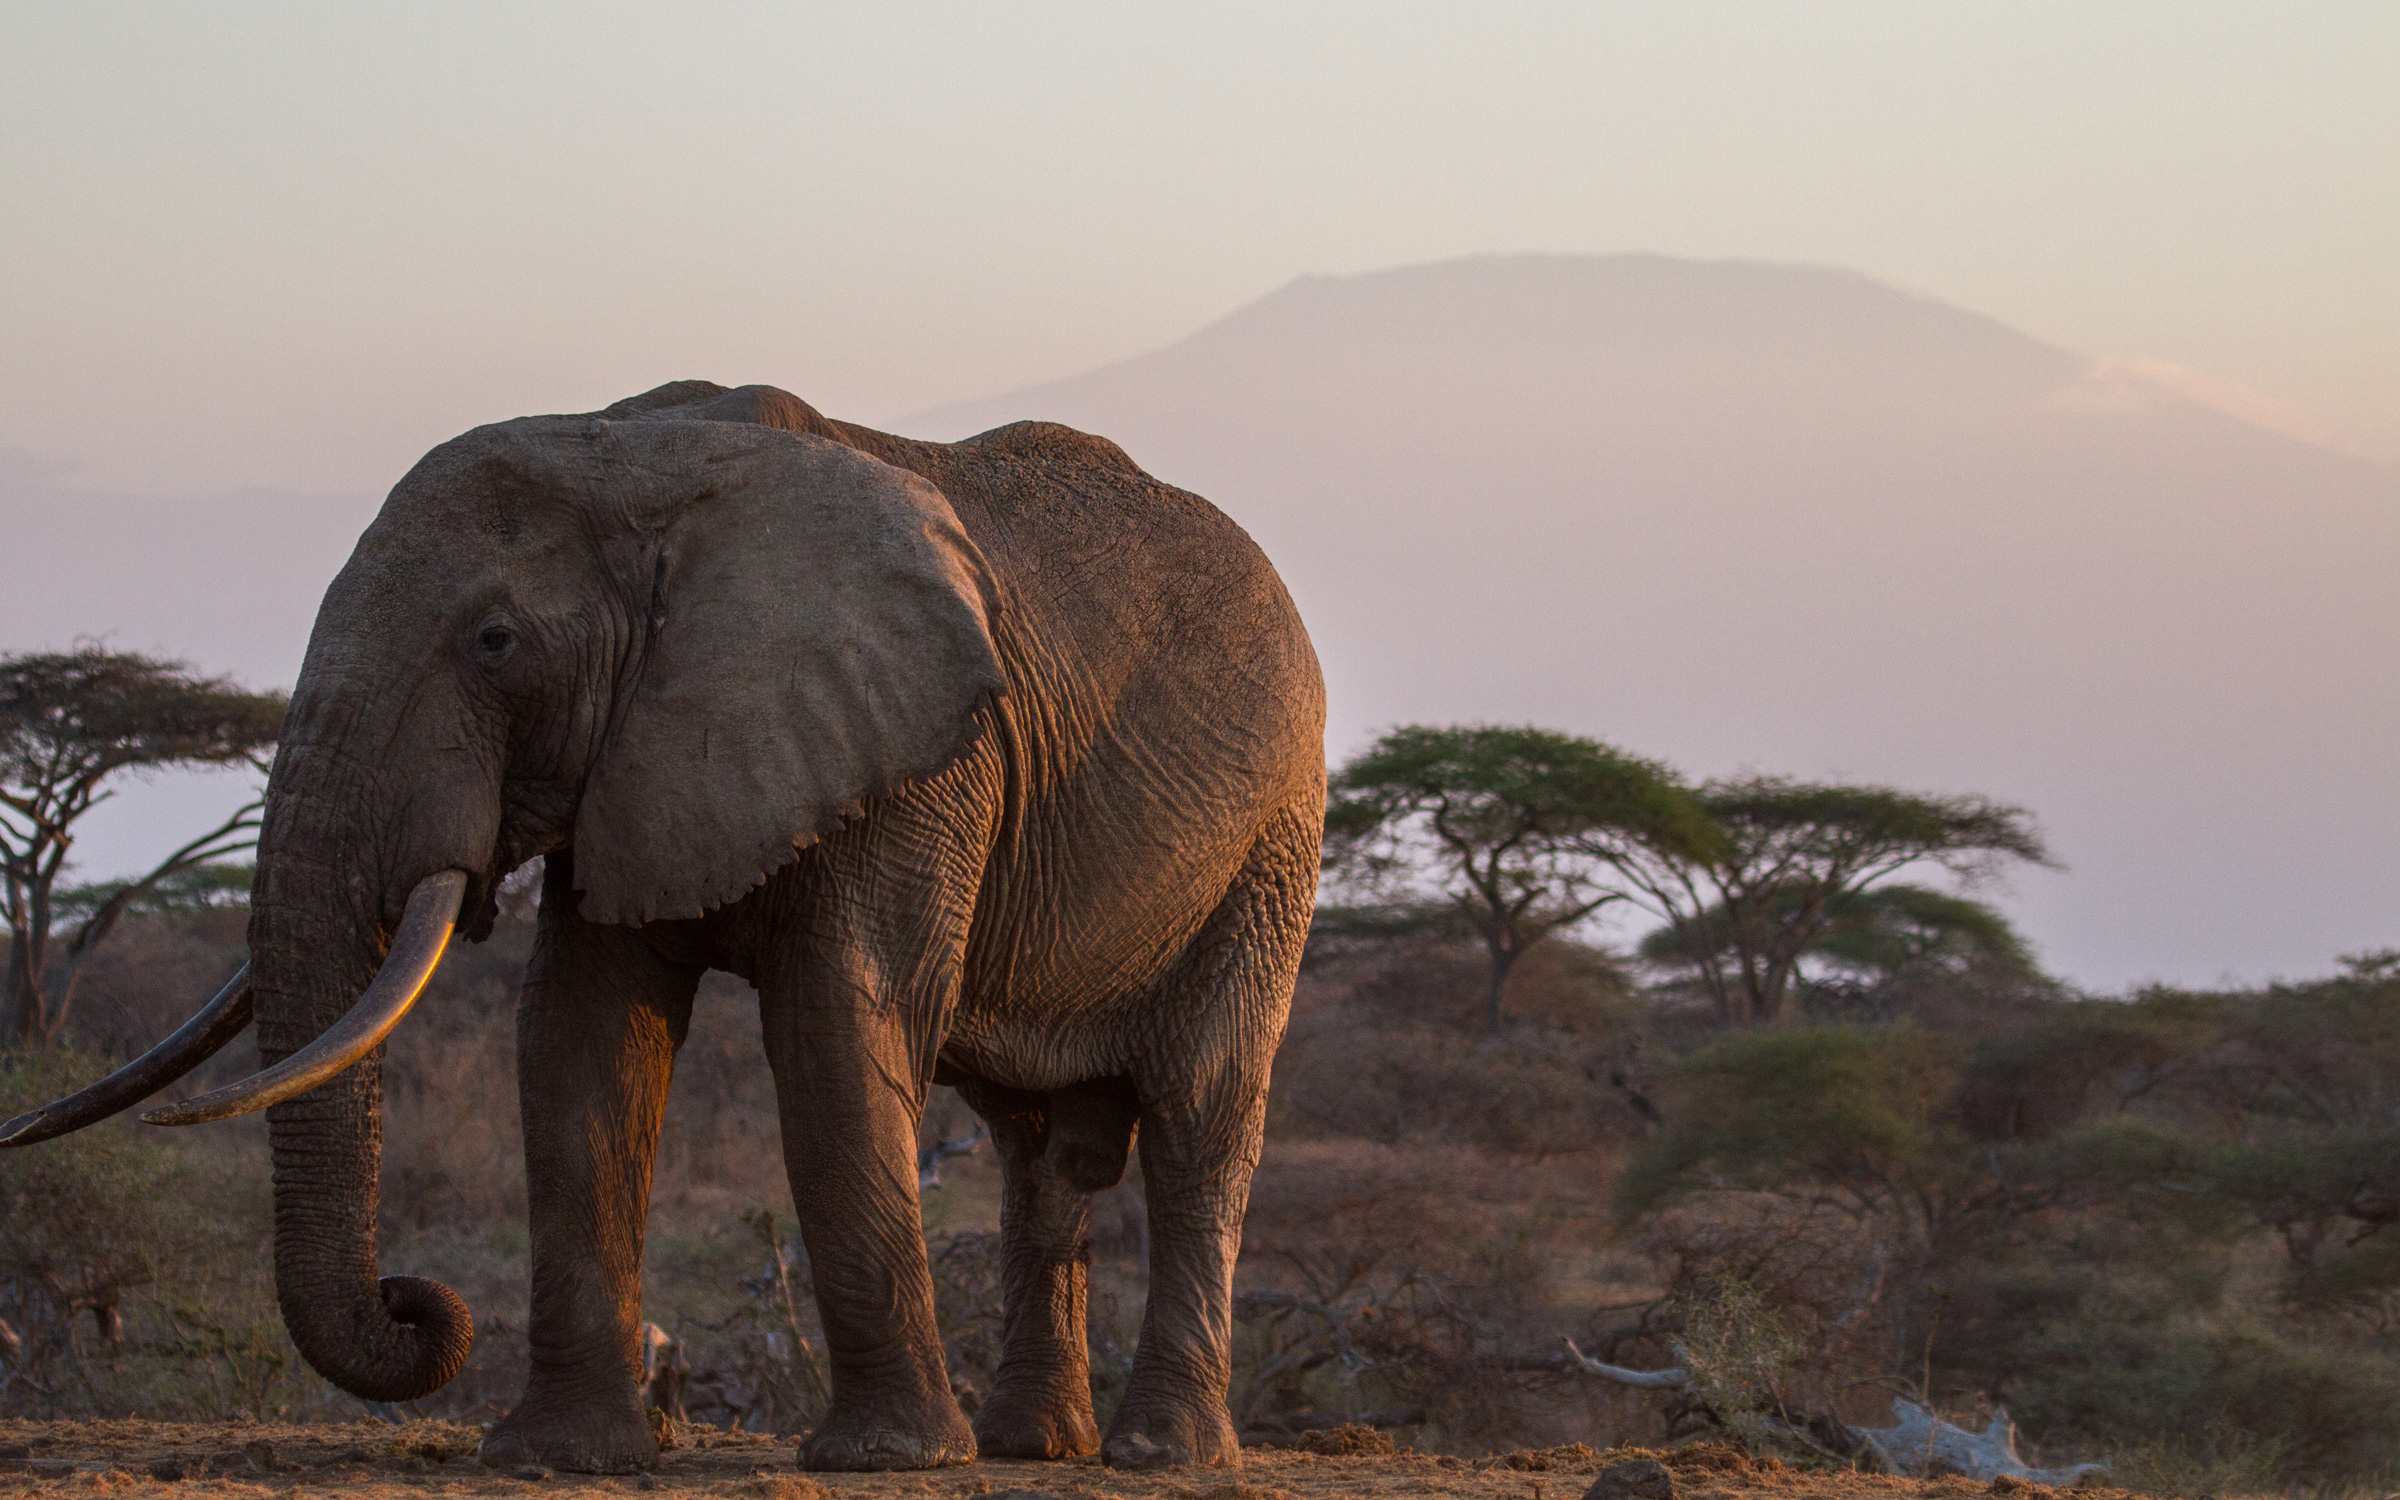 Elephant in Kenya at sunset